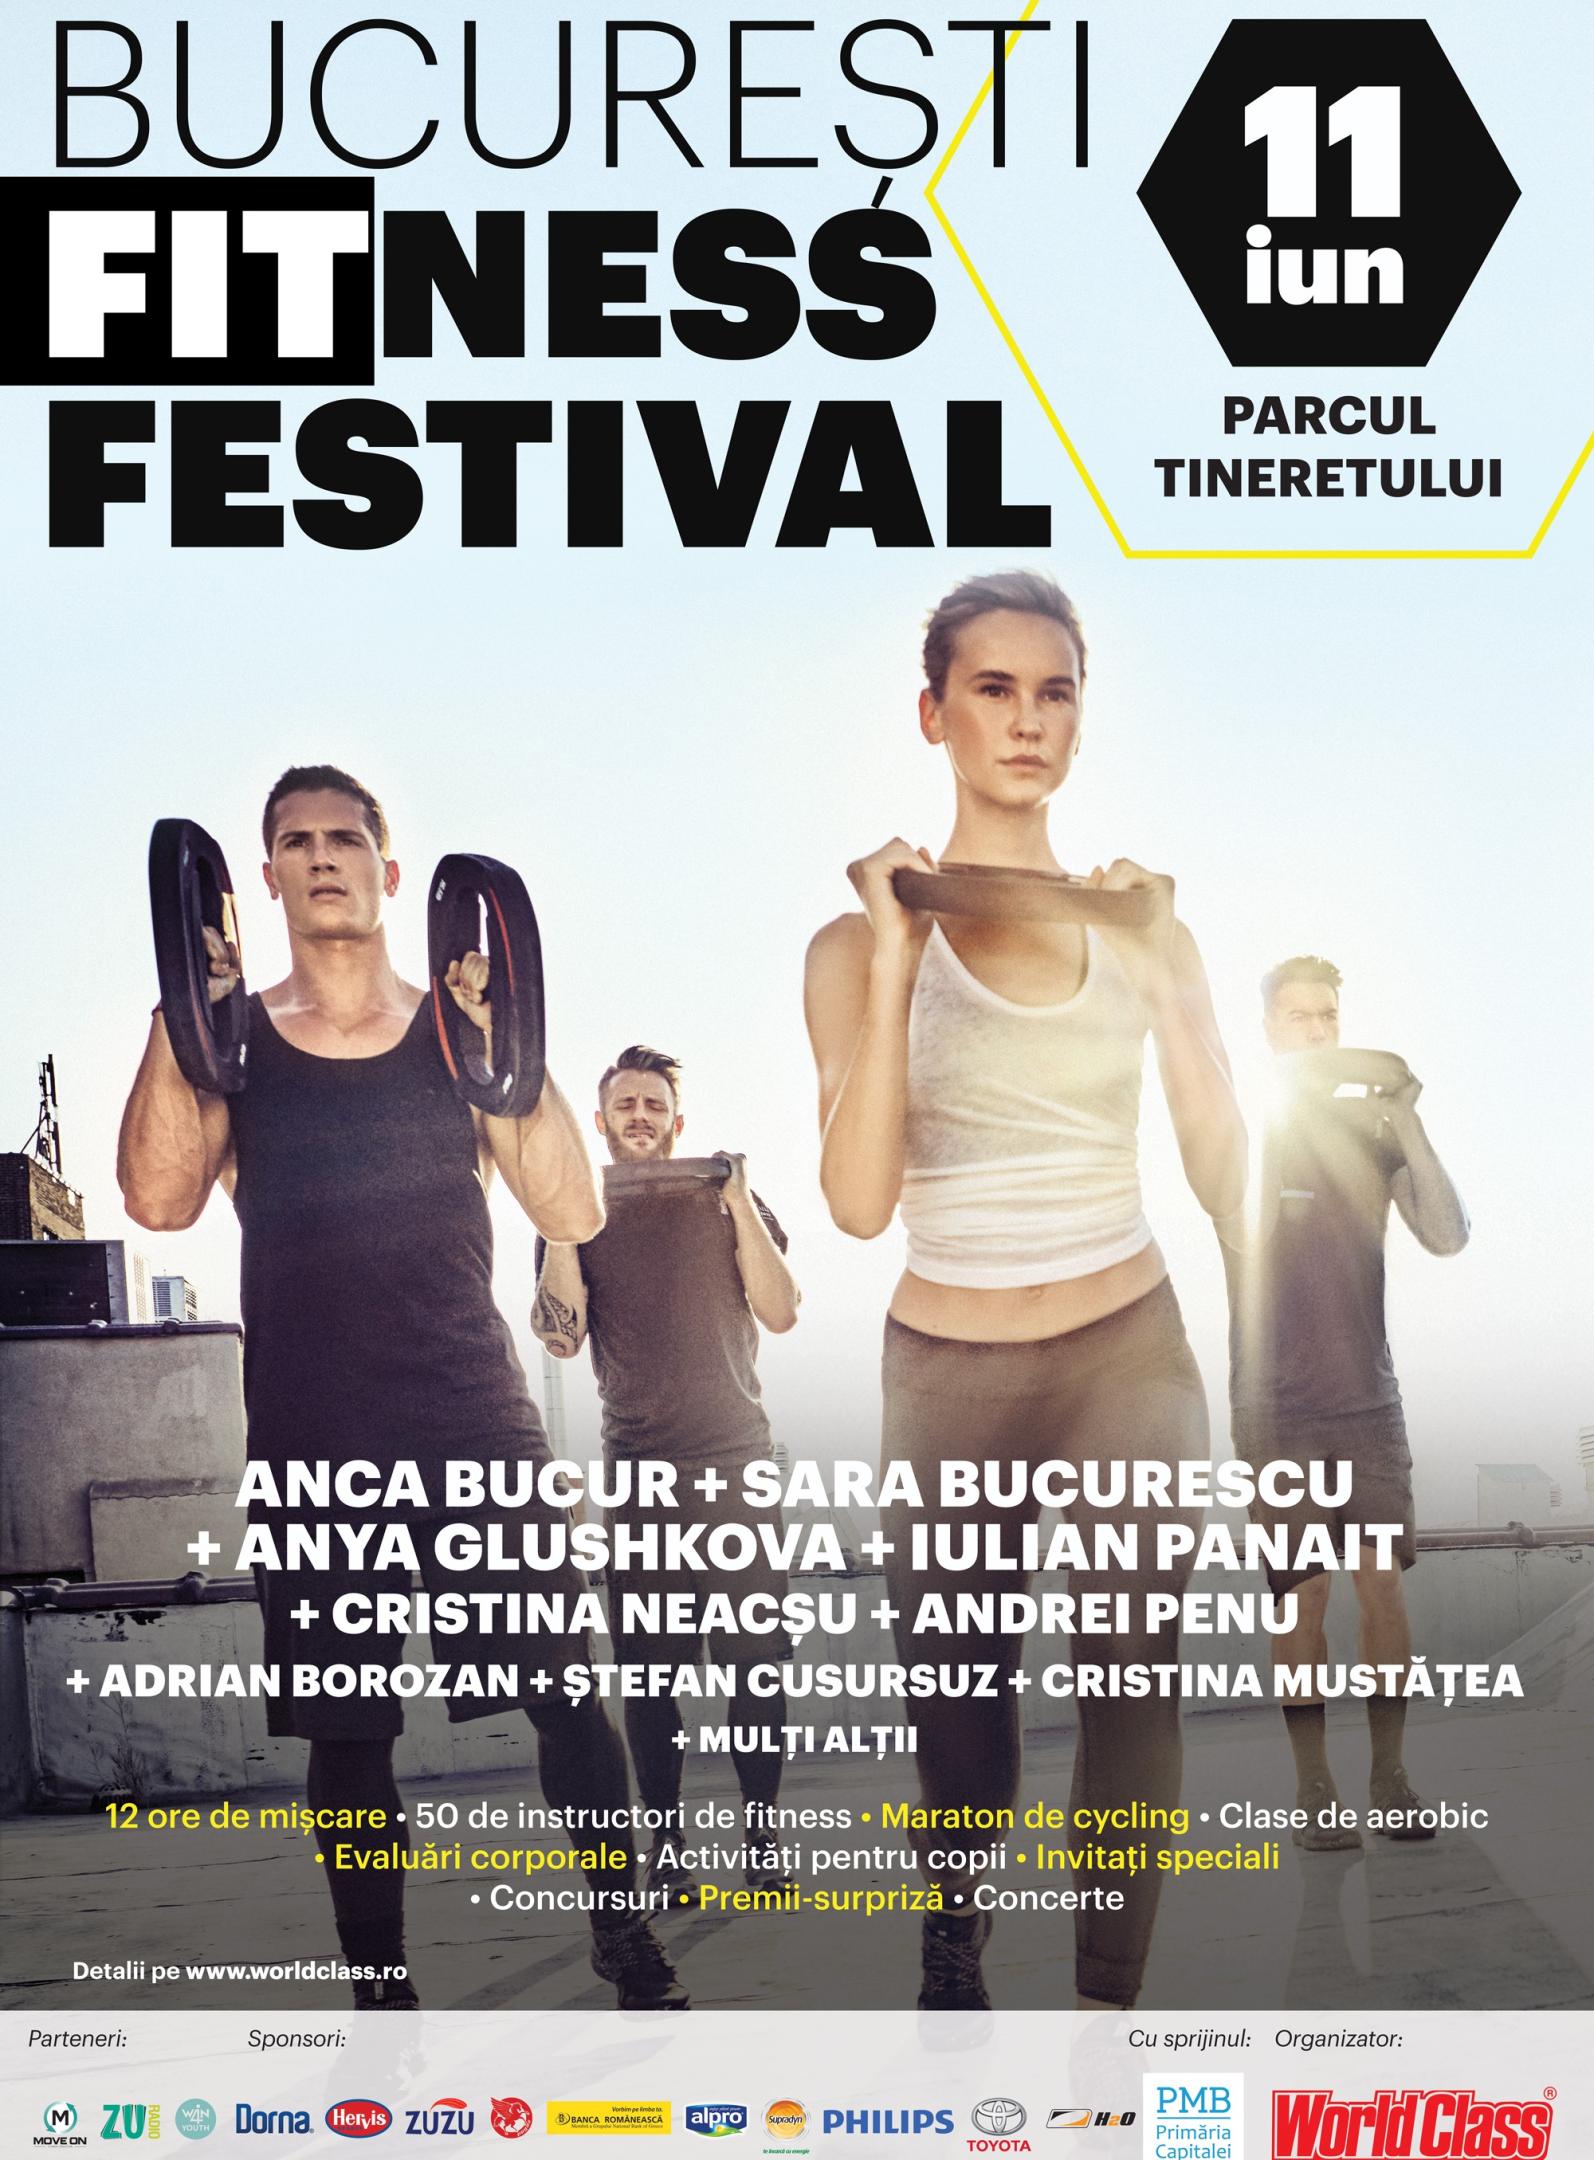 București Fitness Festival – duminică 11 Iunie în Parcul Tineretului!